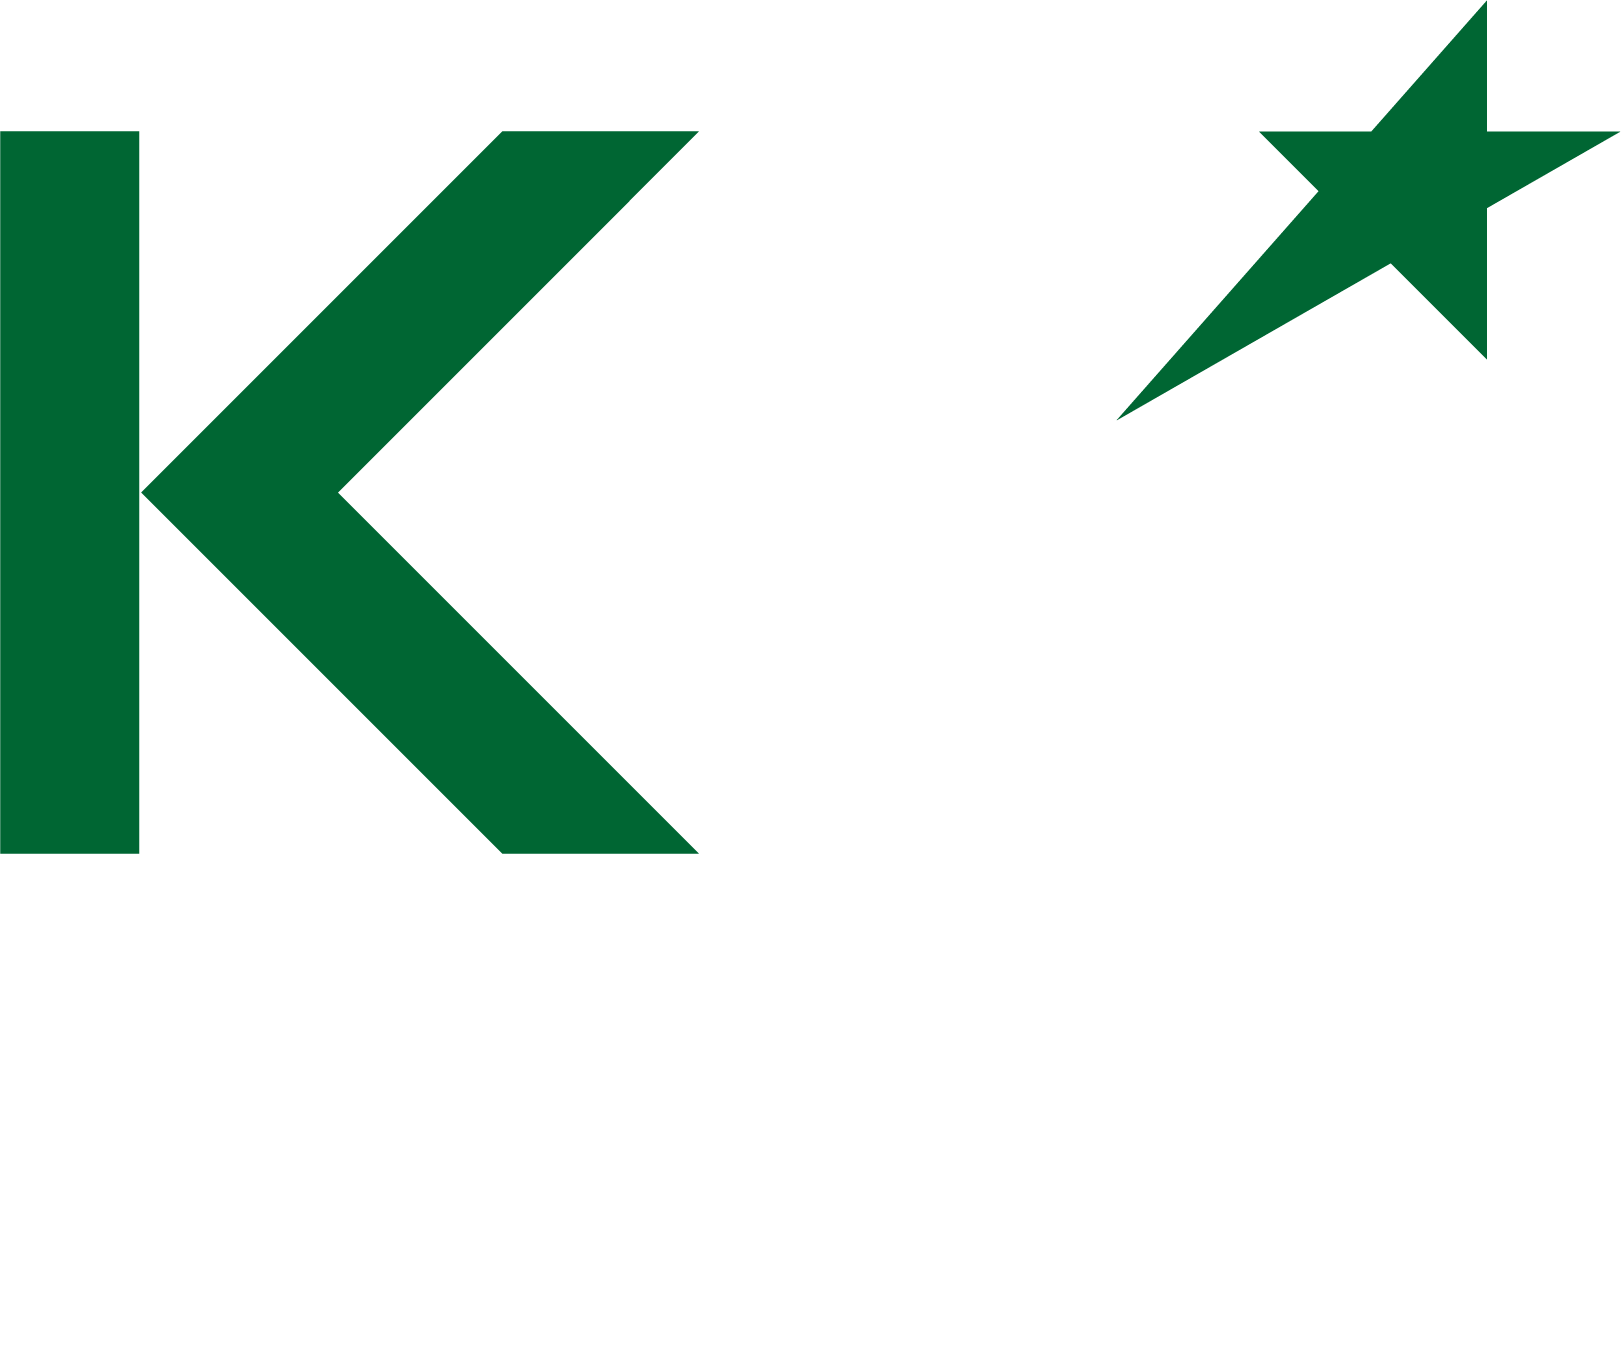 KM-Gaming